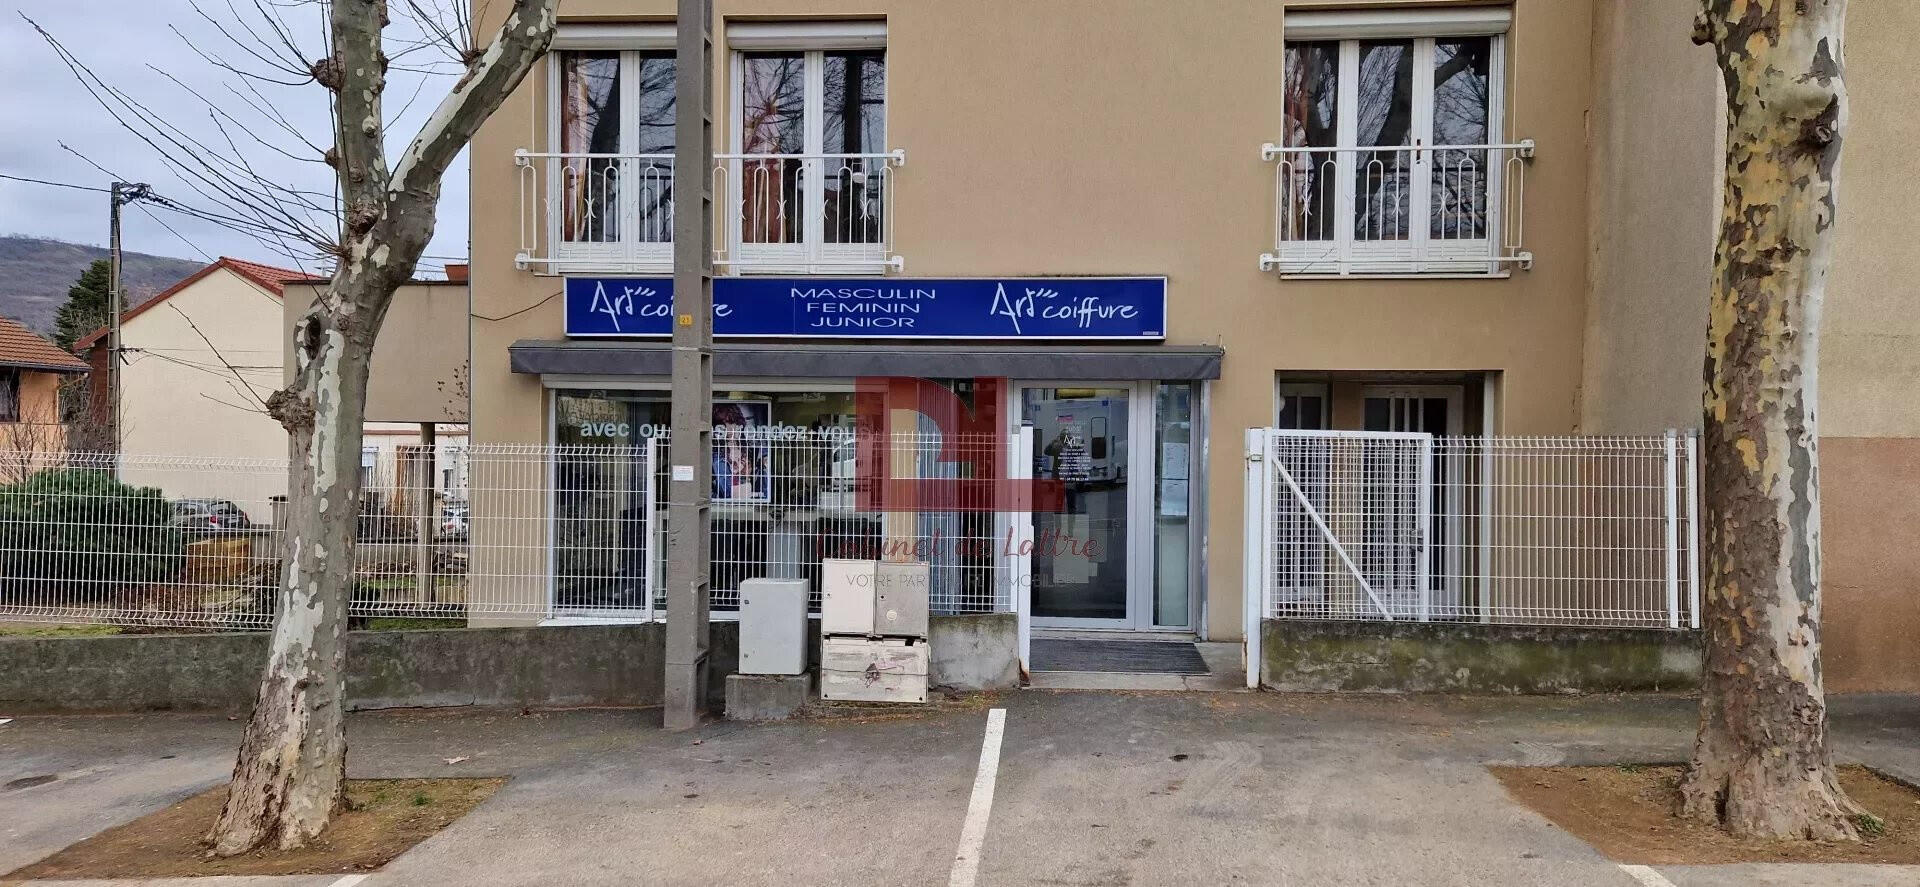 Vente FDC salon de coiffure à Clermont La Glacière